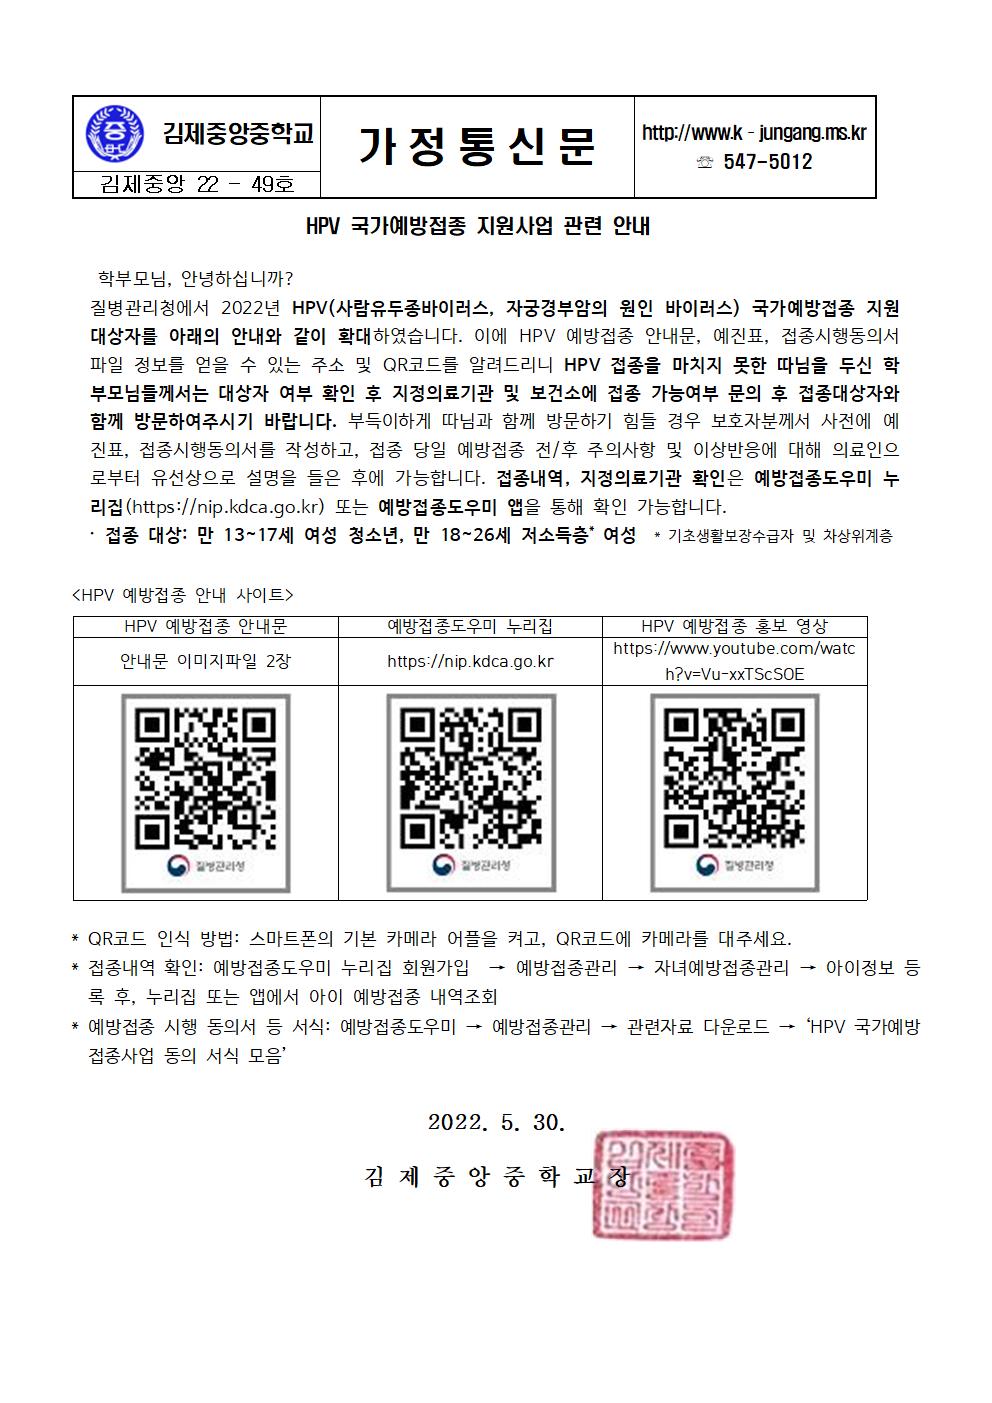 가정통신문 _ HPV 국가예방접종 지원사업 안내001